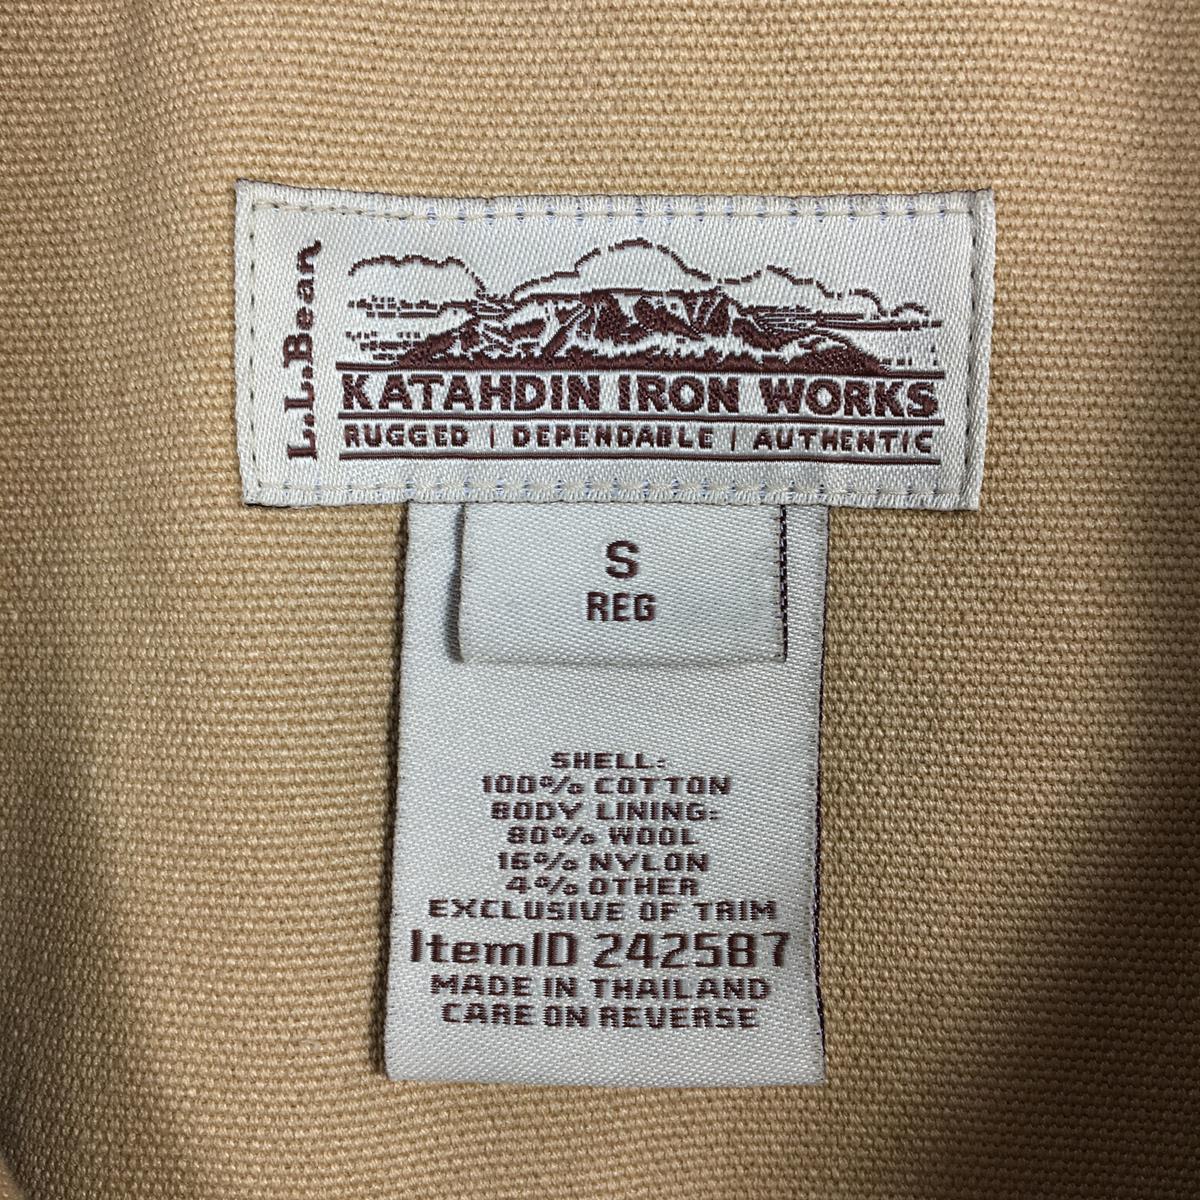 【MEN's S】 エルエルビーン カタディンアイアンワークス ウールラインド ダック ワークベスト Katahdin Iron Works Wool-Lined Duck Work Vest 生産終了モデル 入手困難 LLBEAN 242587 ベージュ系